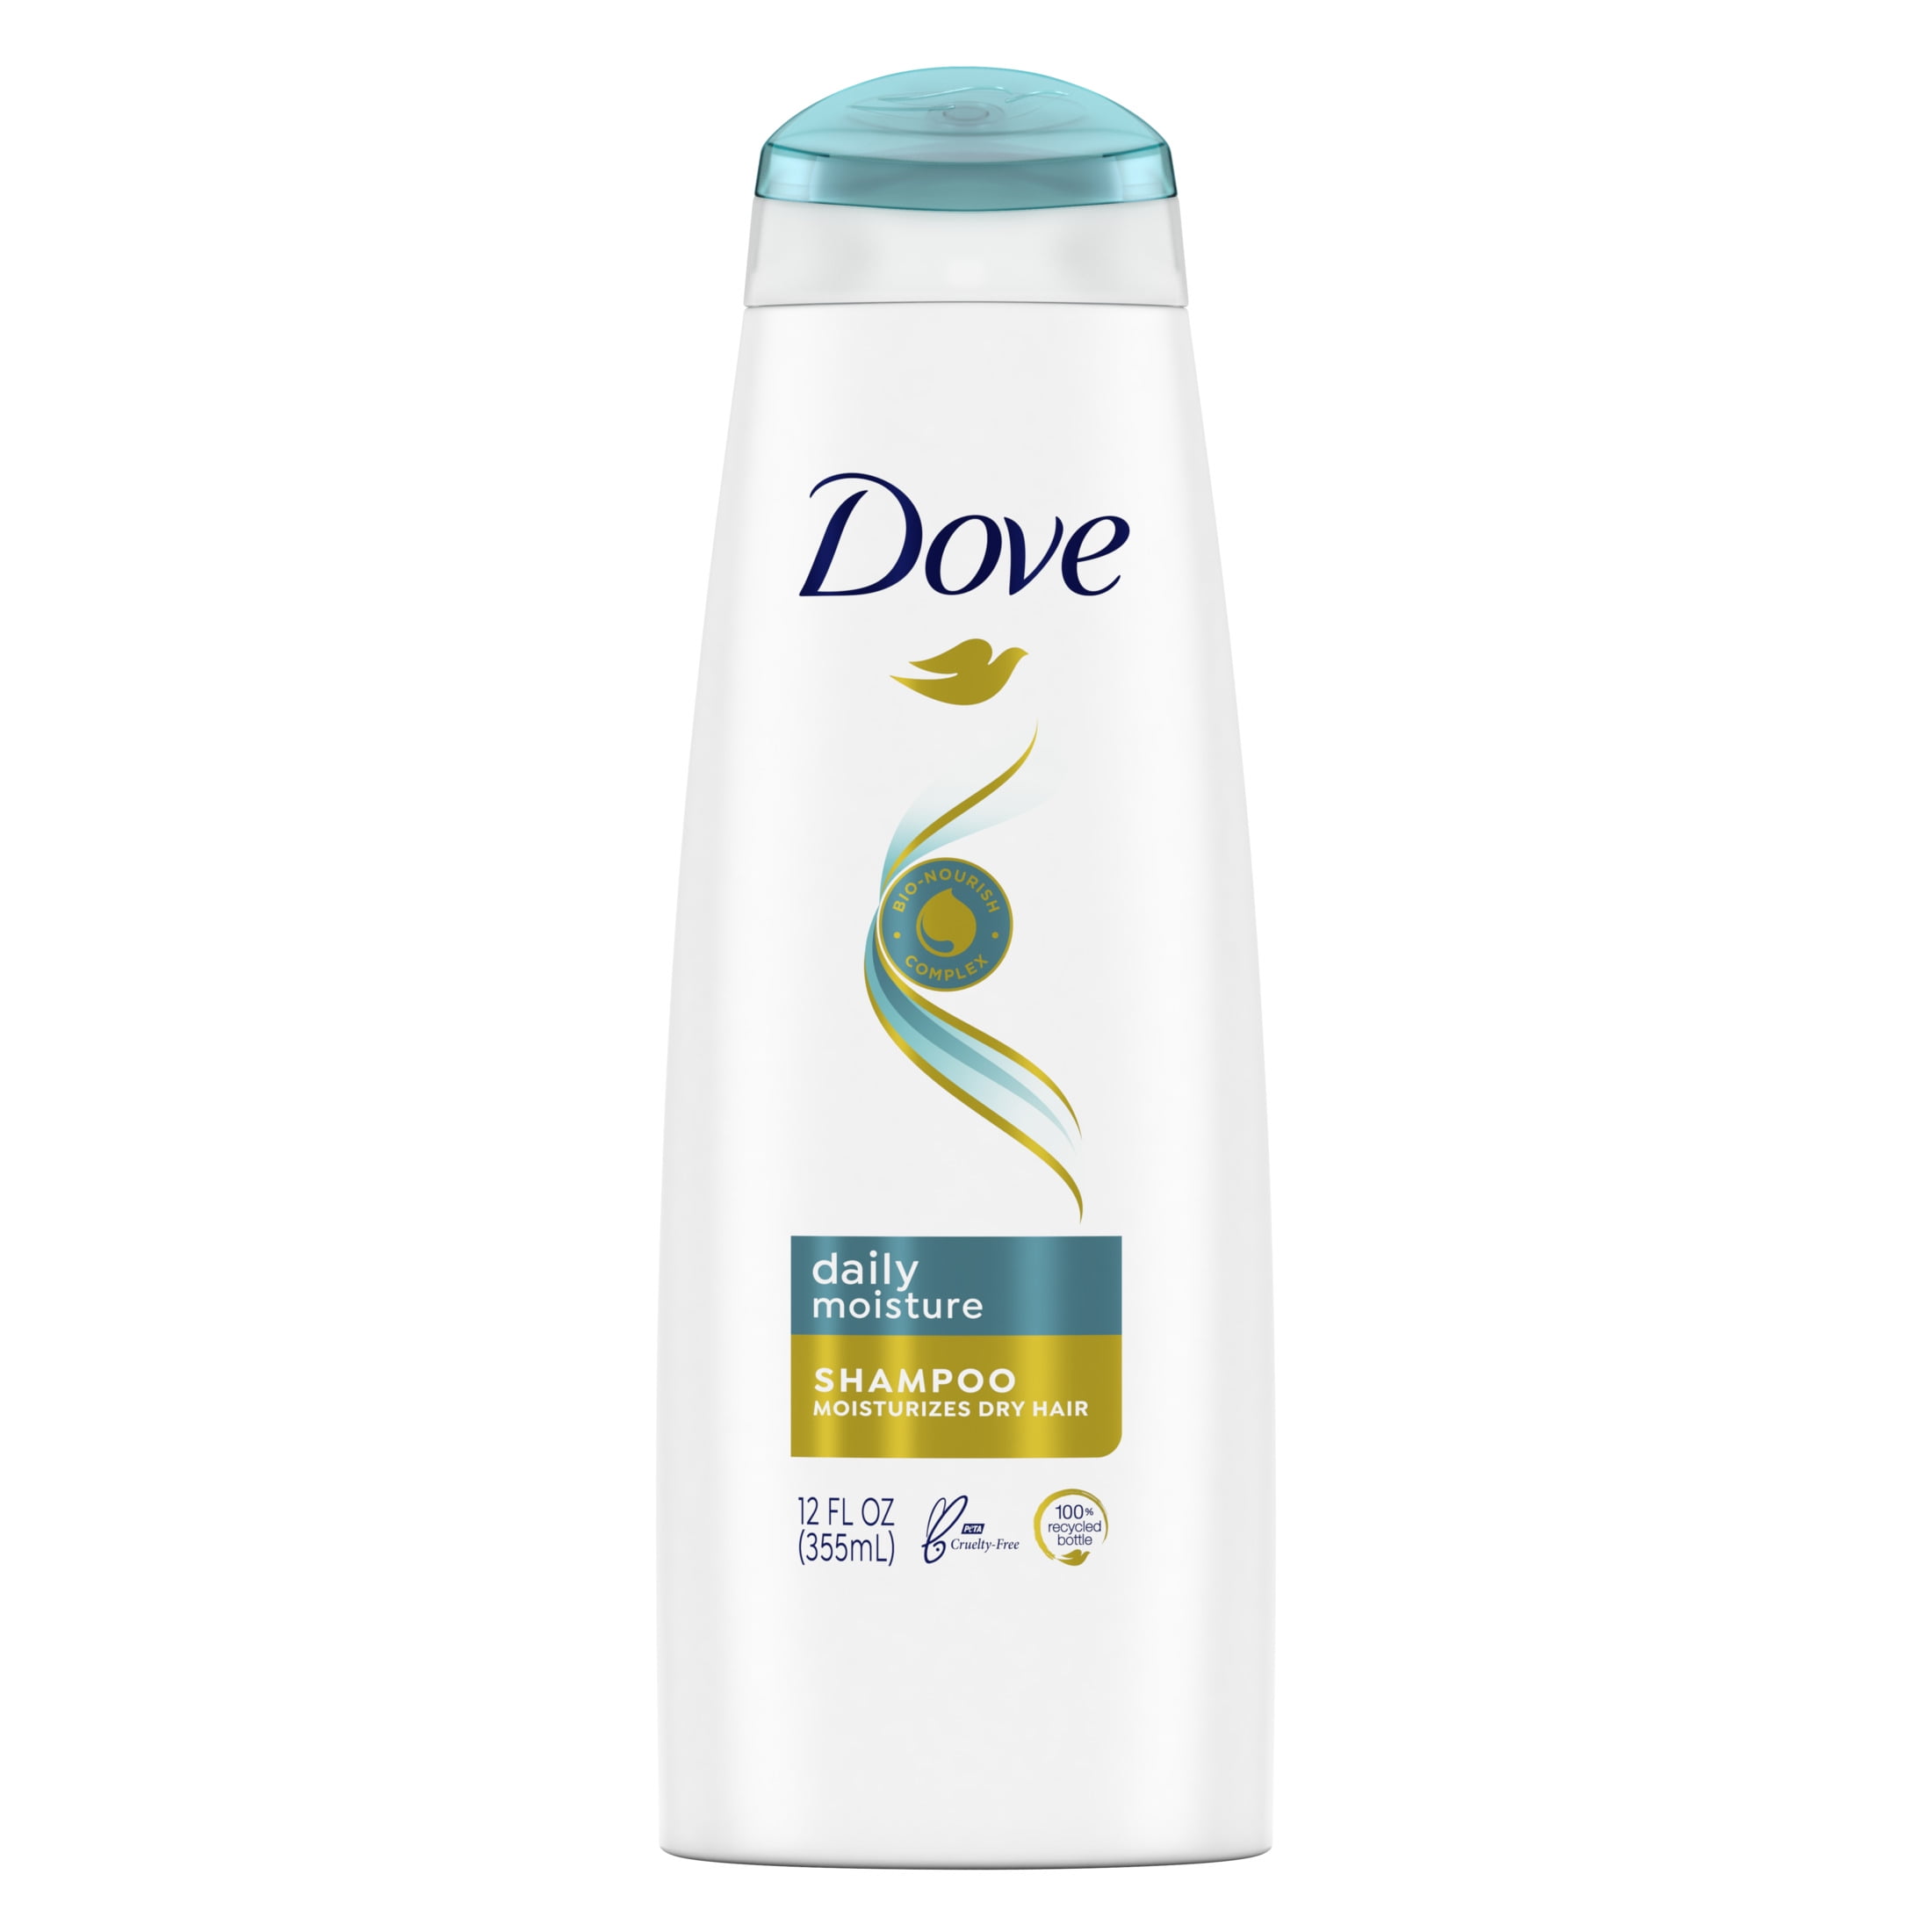 Havn slutpunkt Rummet Dove Daily Moisture Shampoo for Dry Hair 12 fl oz - Walmart.com